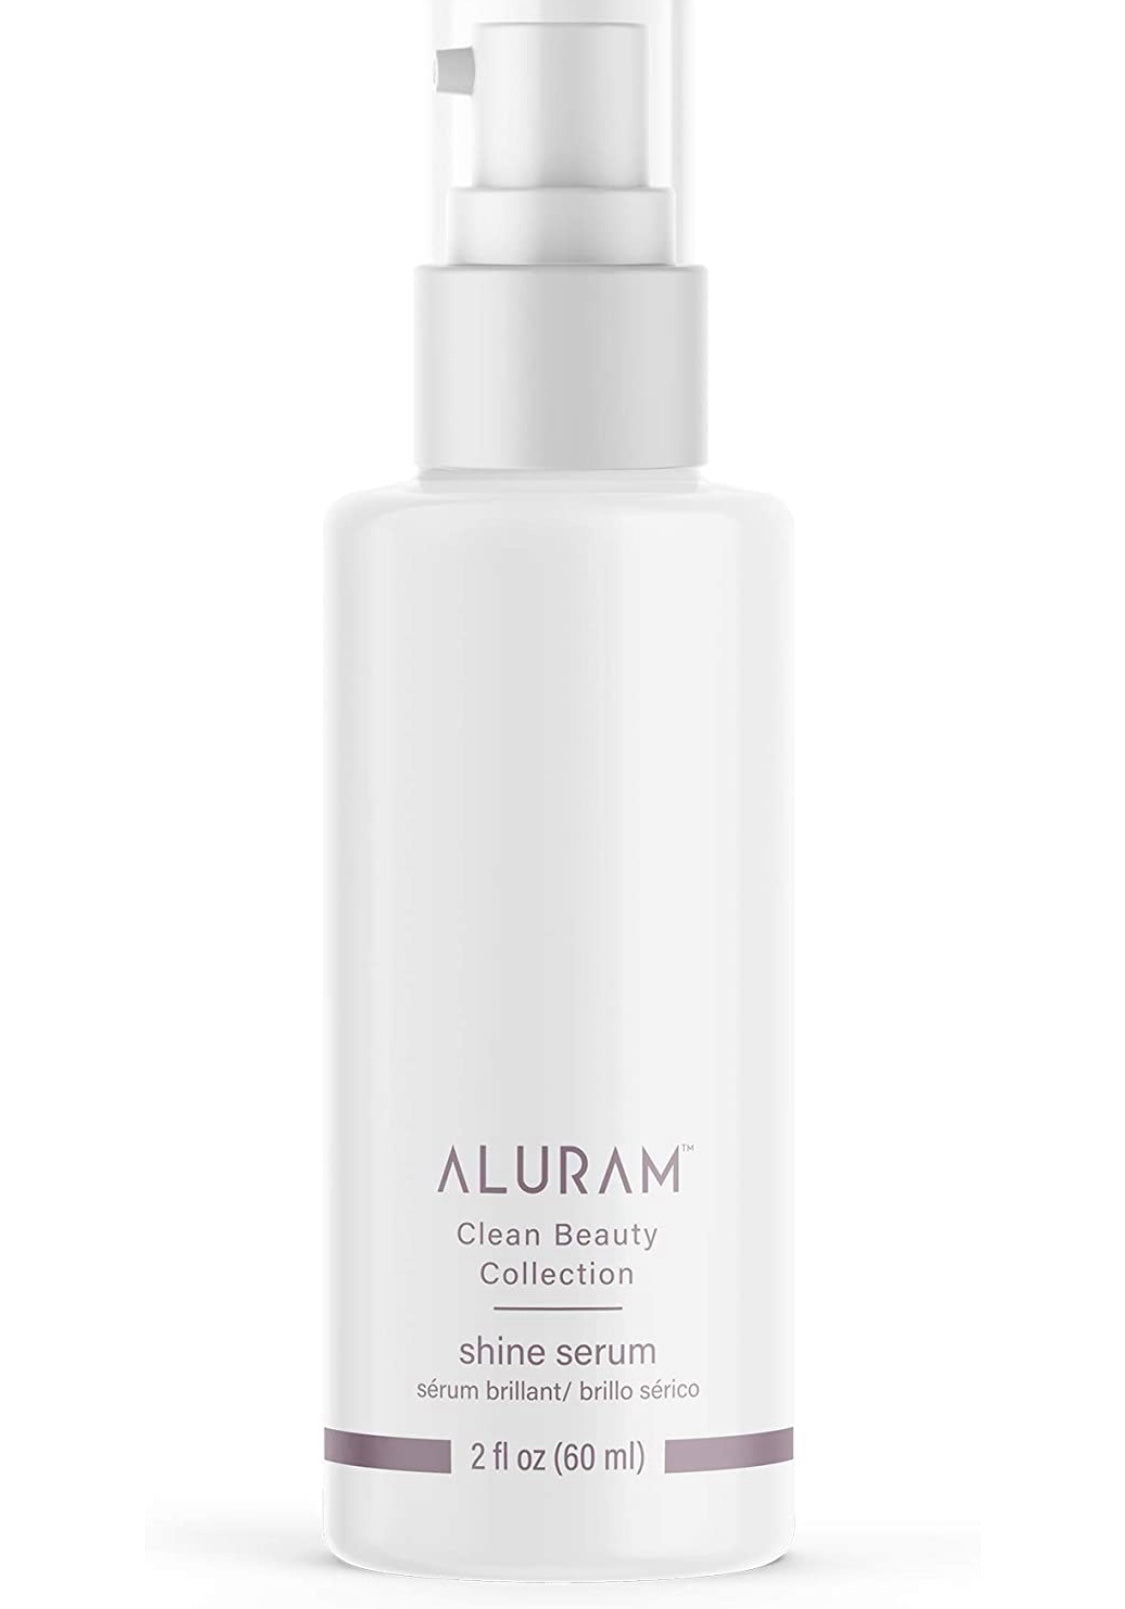 Aluram - Shine serum2 fl. oz./ 60 ml